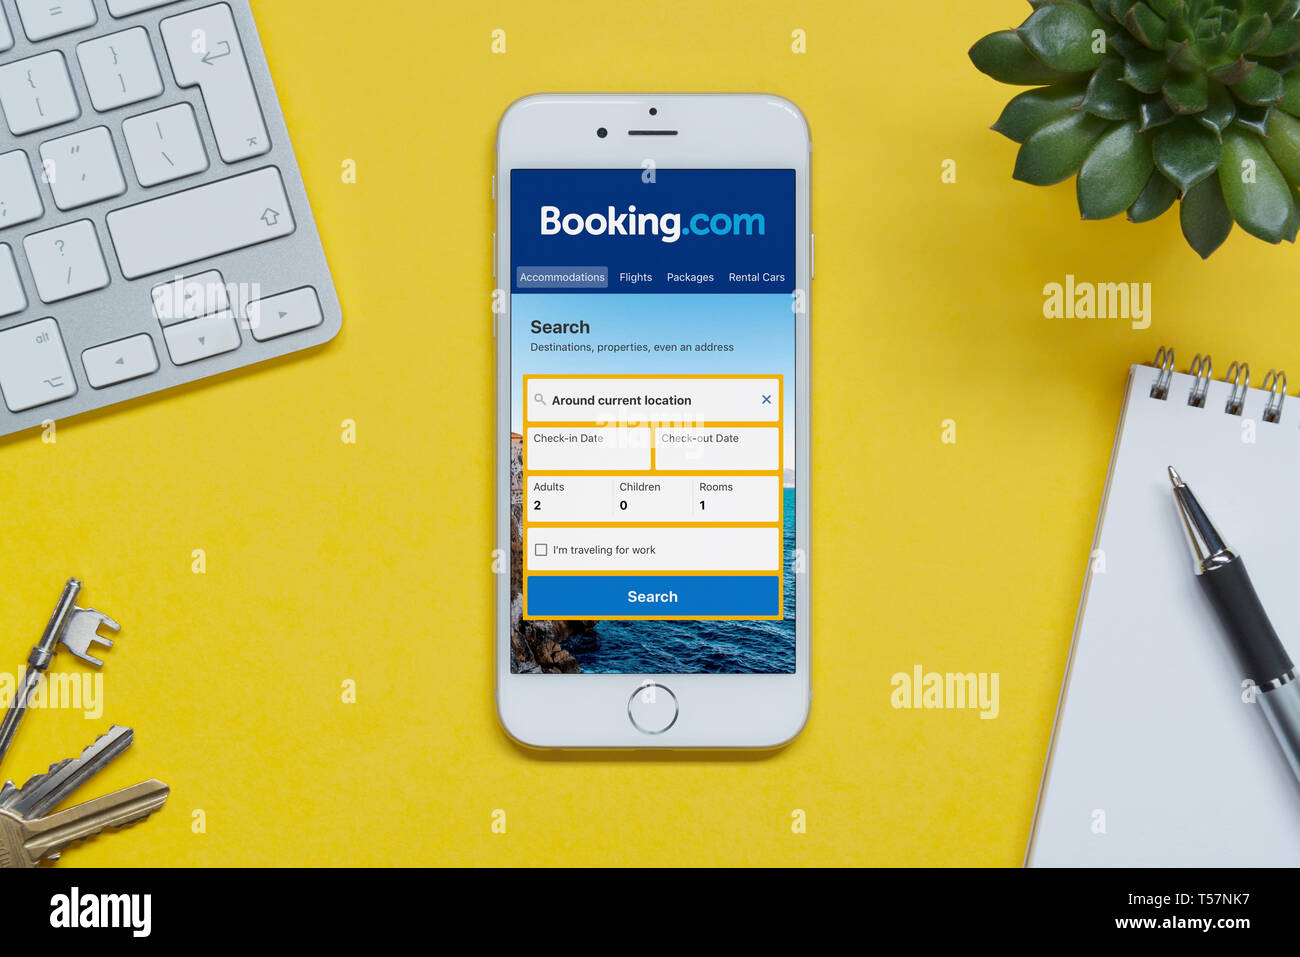 Ein iPhone zeigt die Booking.com Webseite ruht auf einem gelben Hintergrund Tabelle mit einer Tastatur, Tasten, Notepad und Anlage (nur redaktionelle Nutzung). Stockfoto